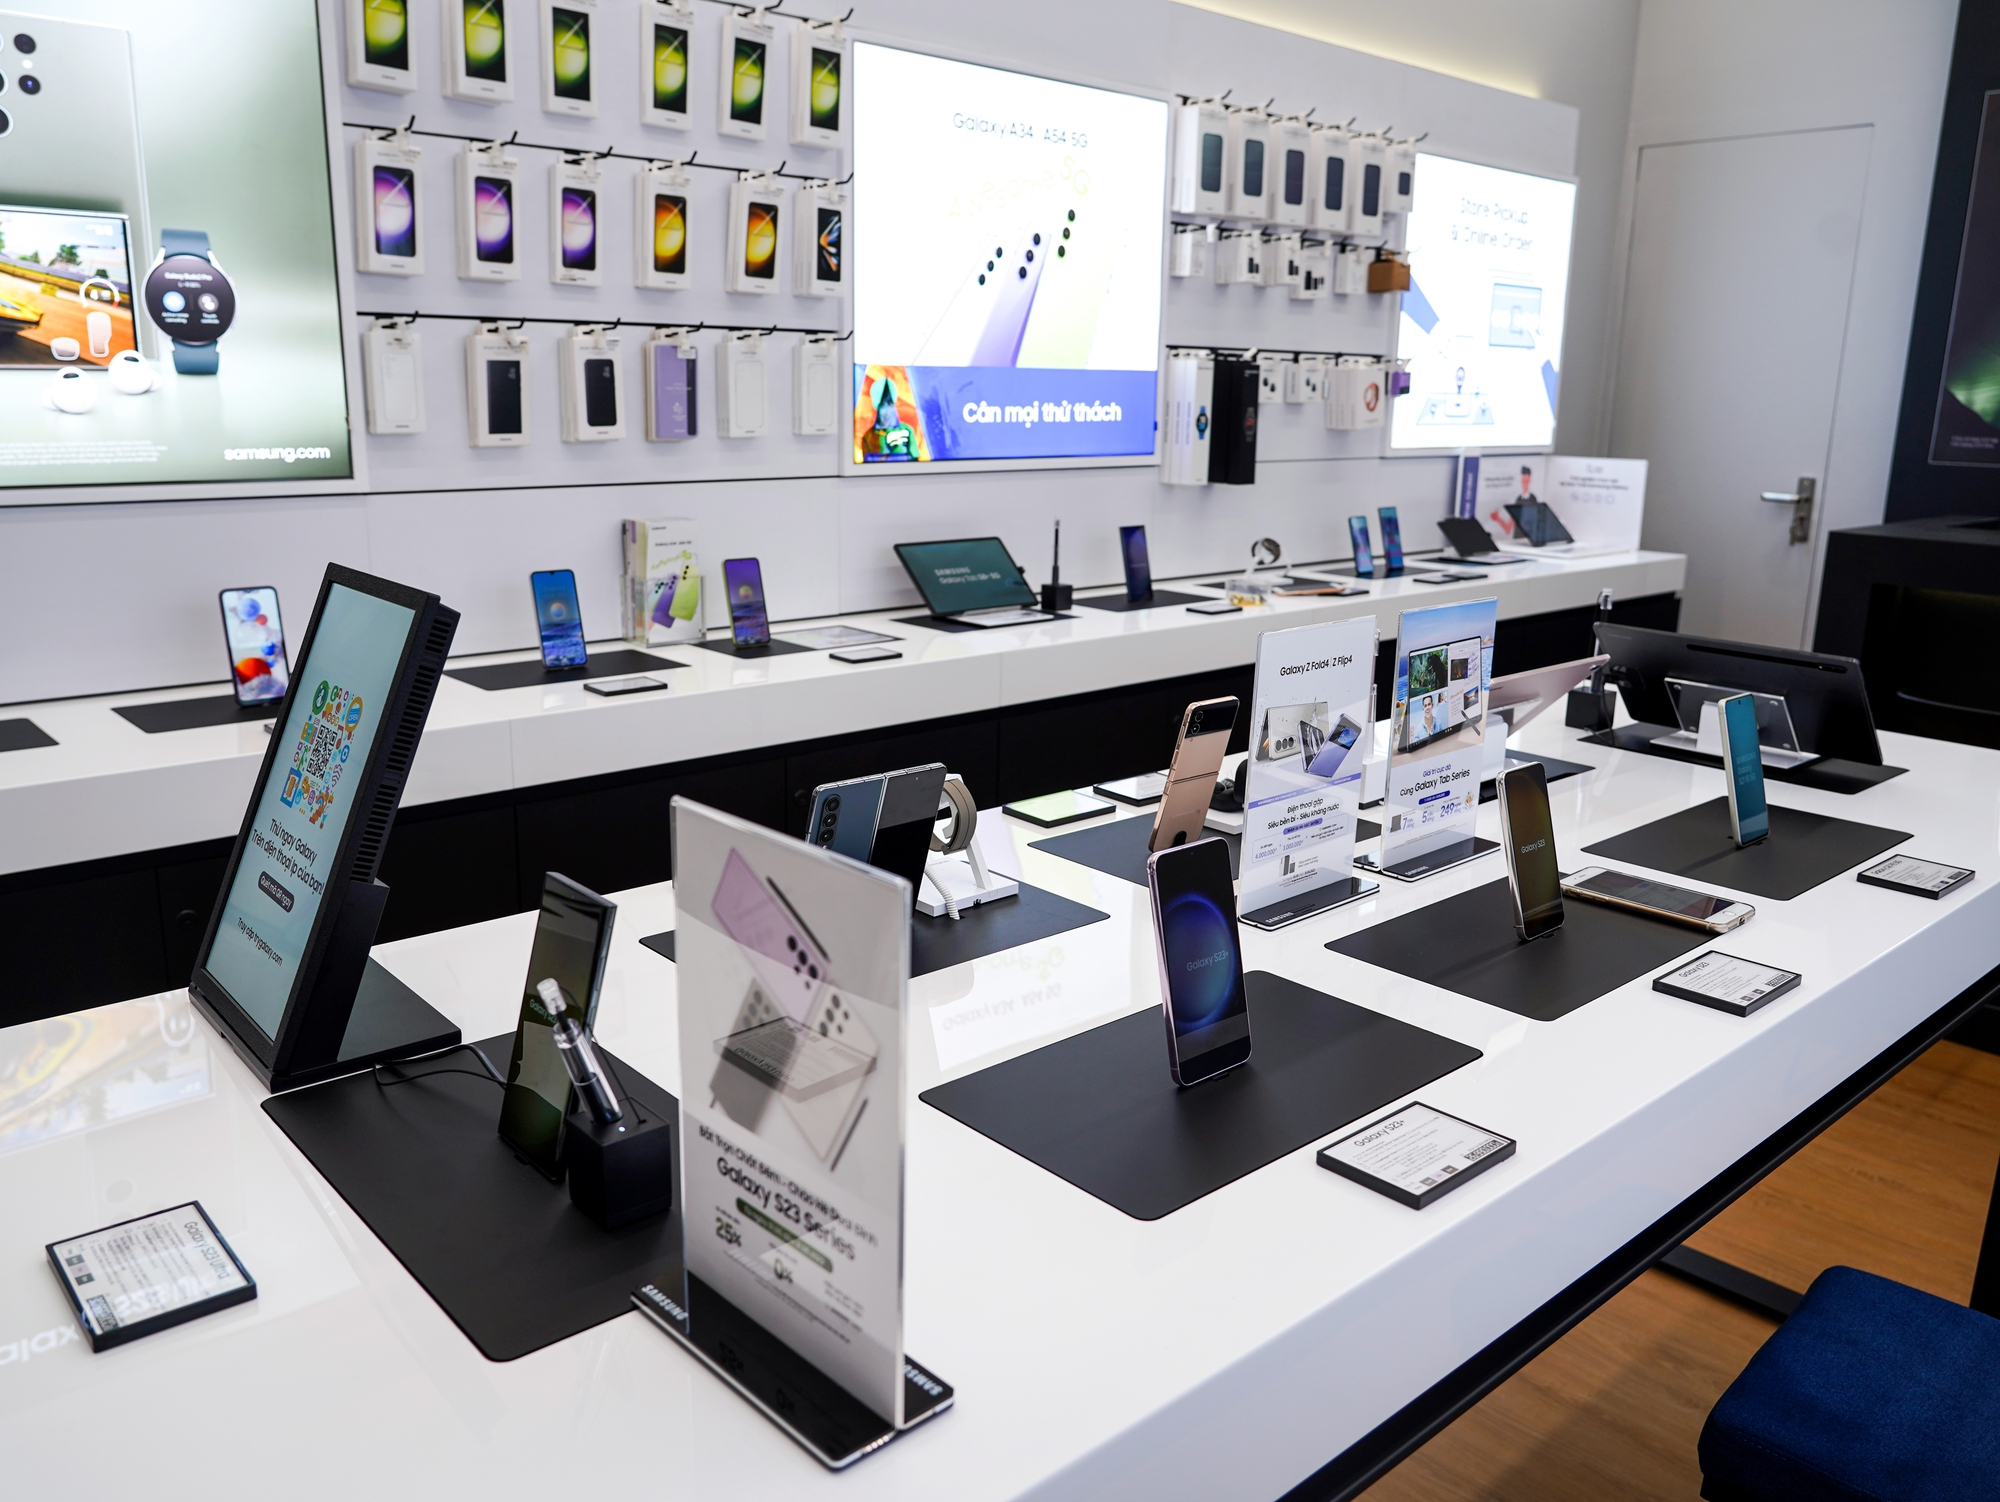 MT Smart kết hợp cùng Samsung khai trương cửa hàng trải nghiệm cao cấp - Ảnh 5.